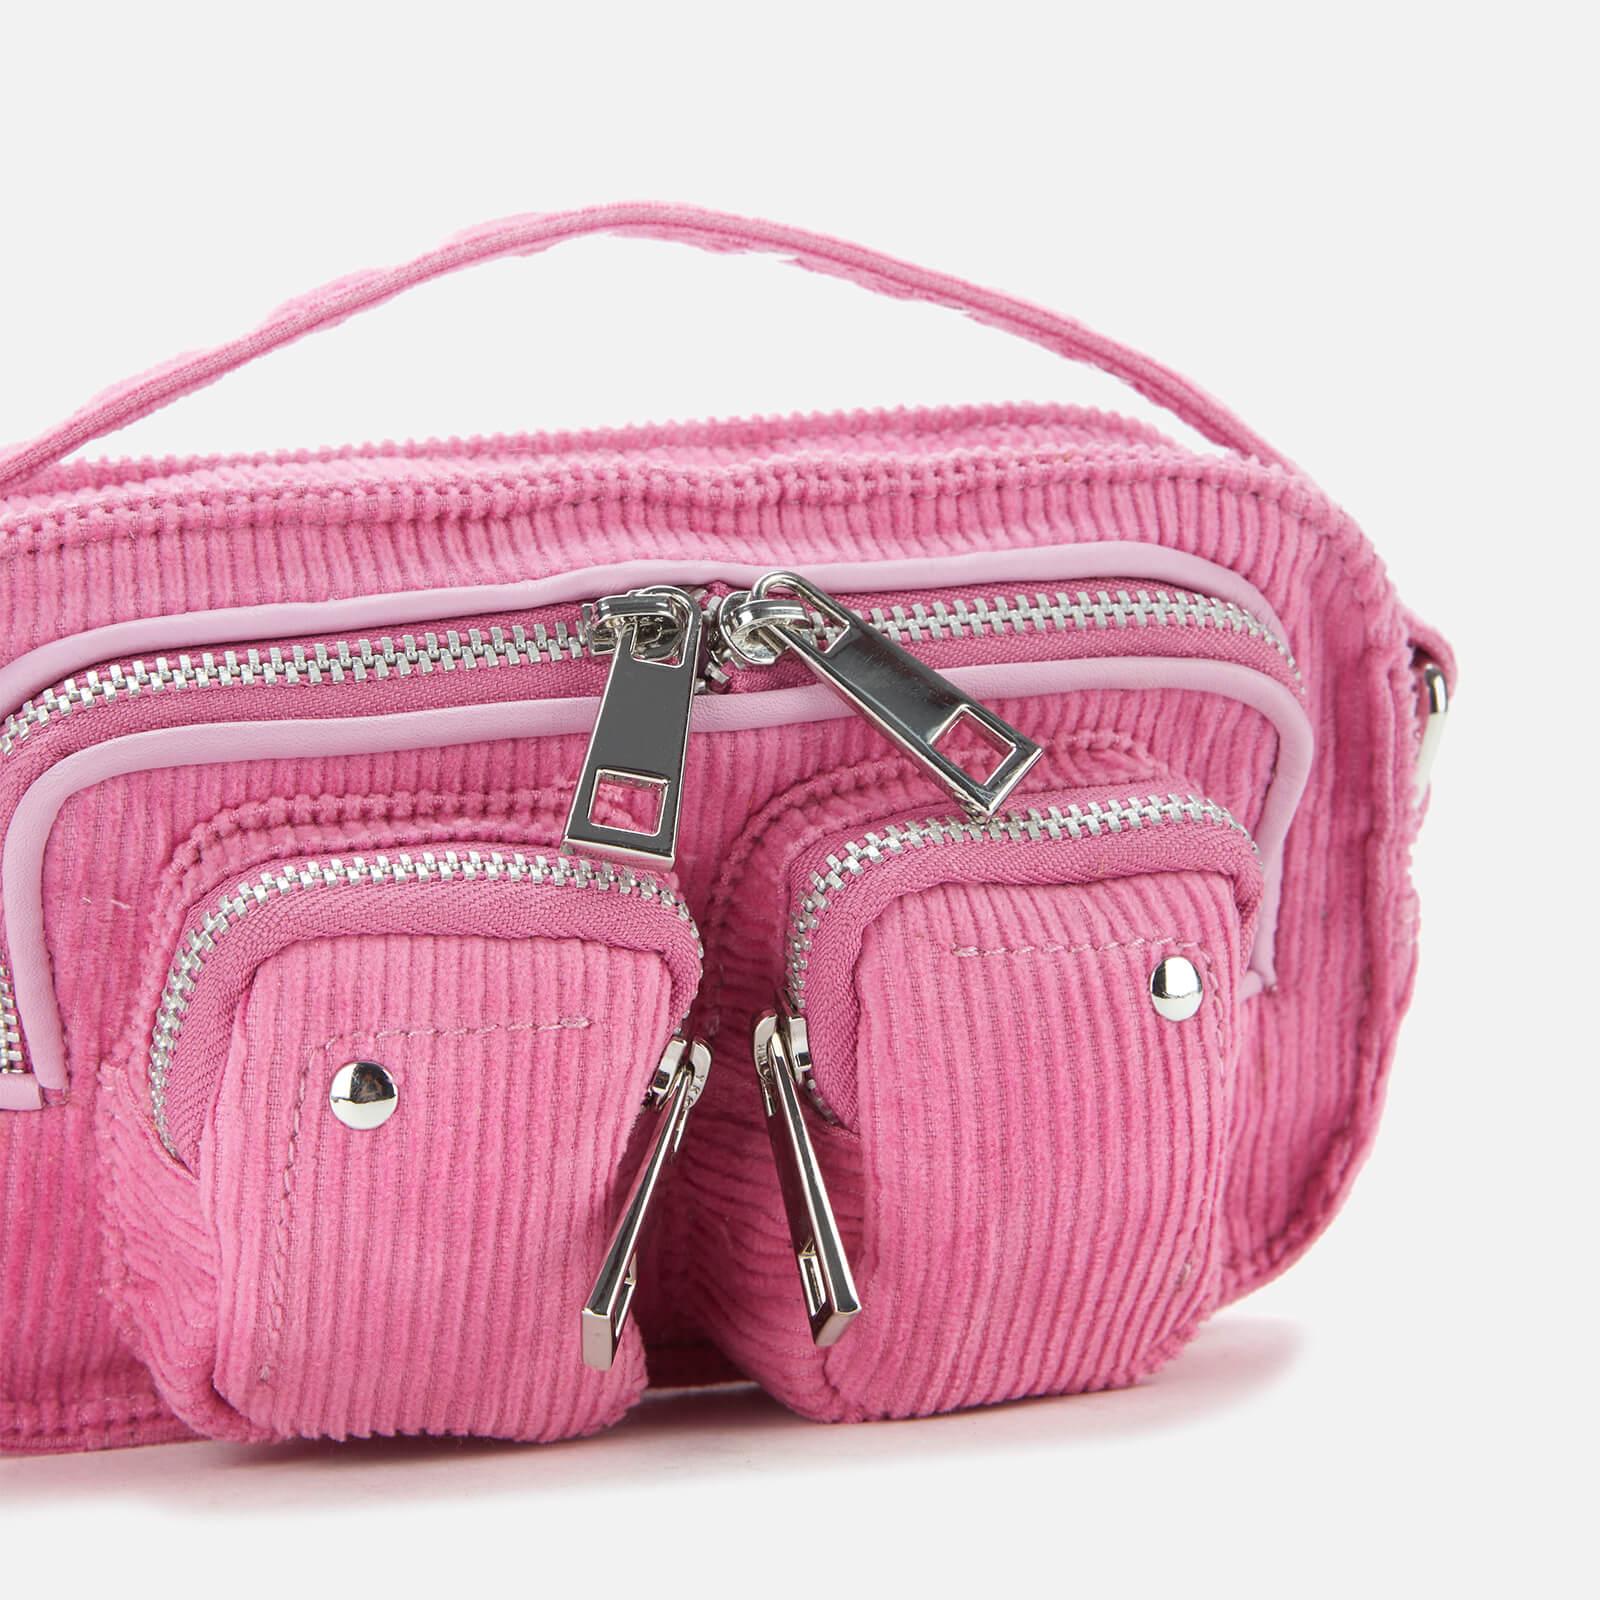 Nunoo Helena Corduroy Cross Body Bag in Pink | Lyst